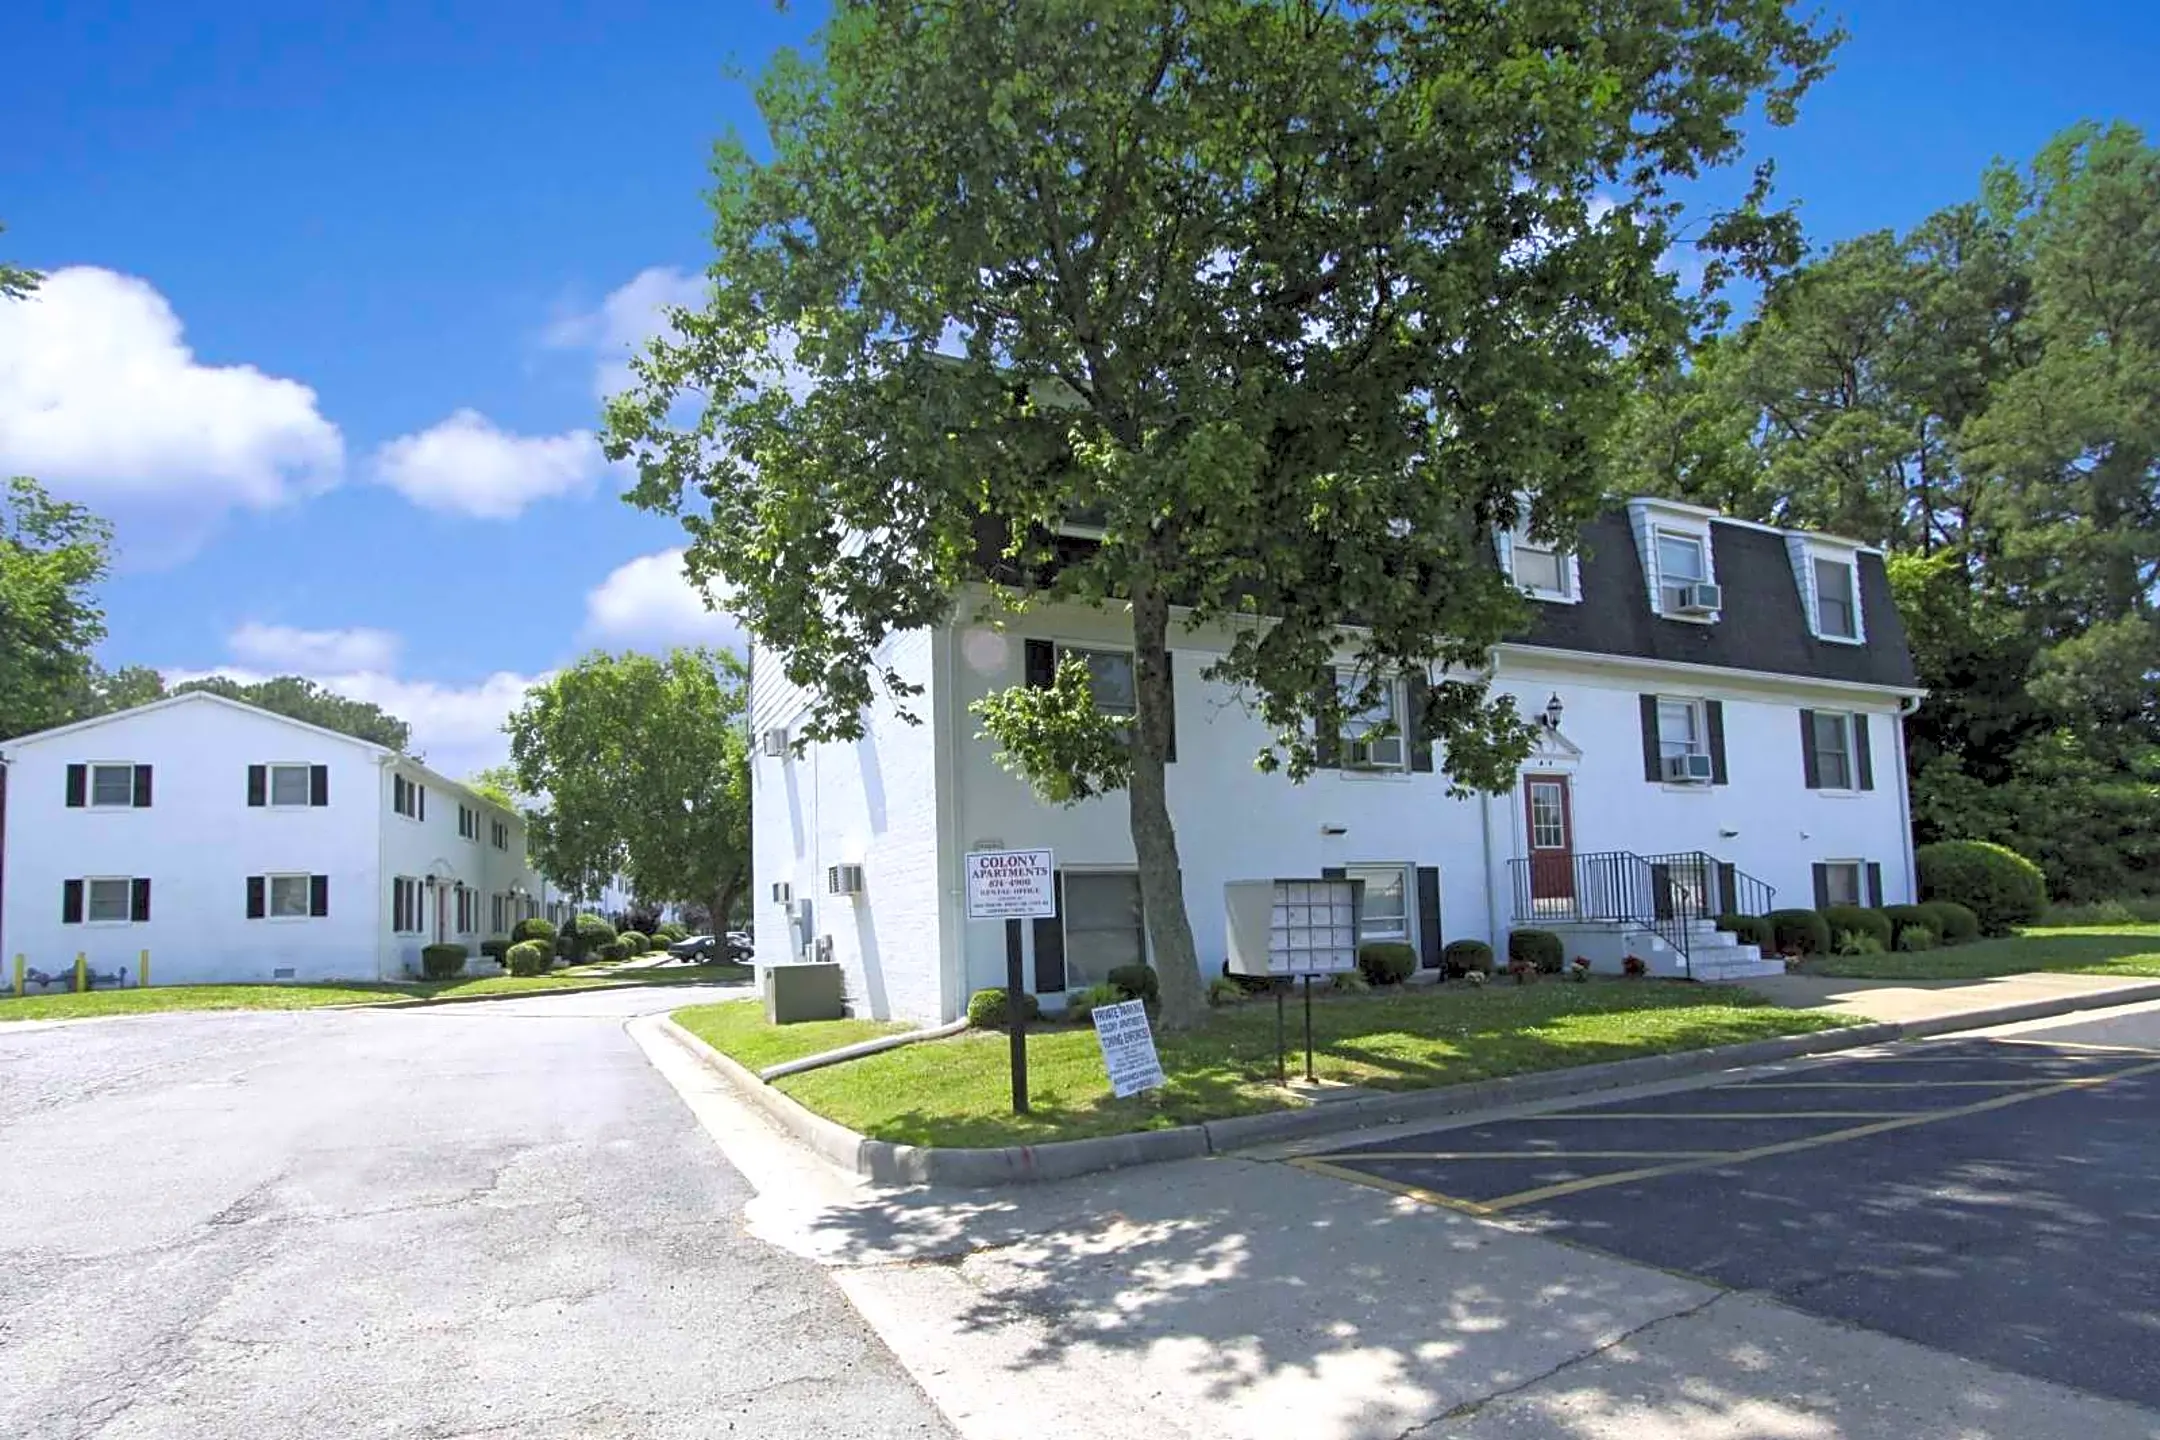 Building - Colony Apartments - Newport News, VA